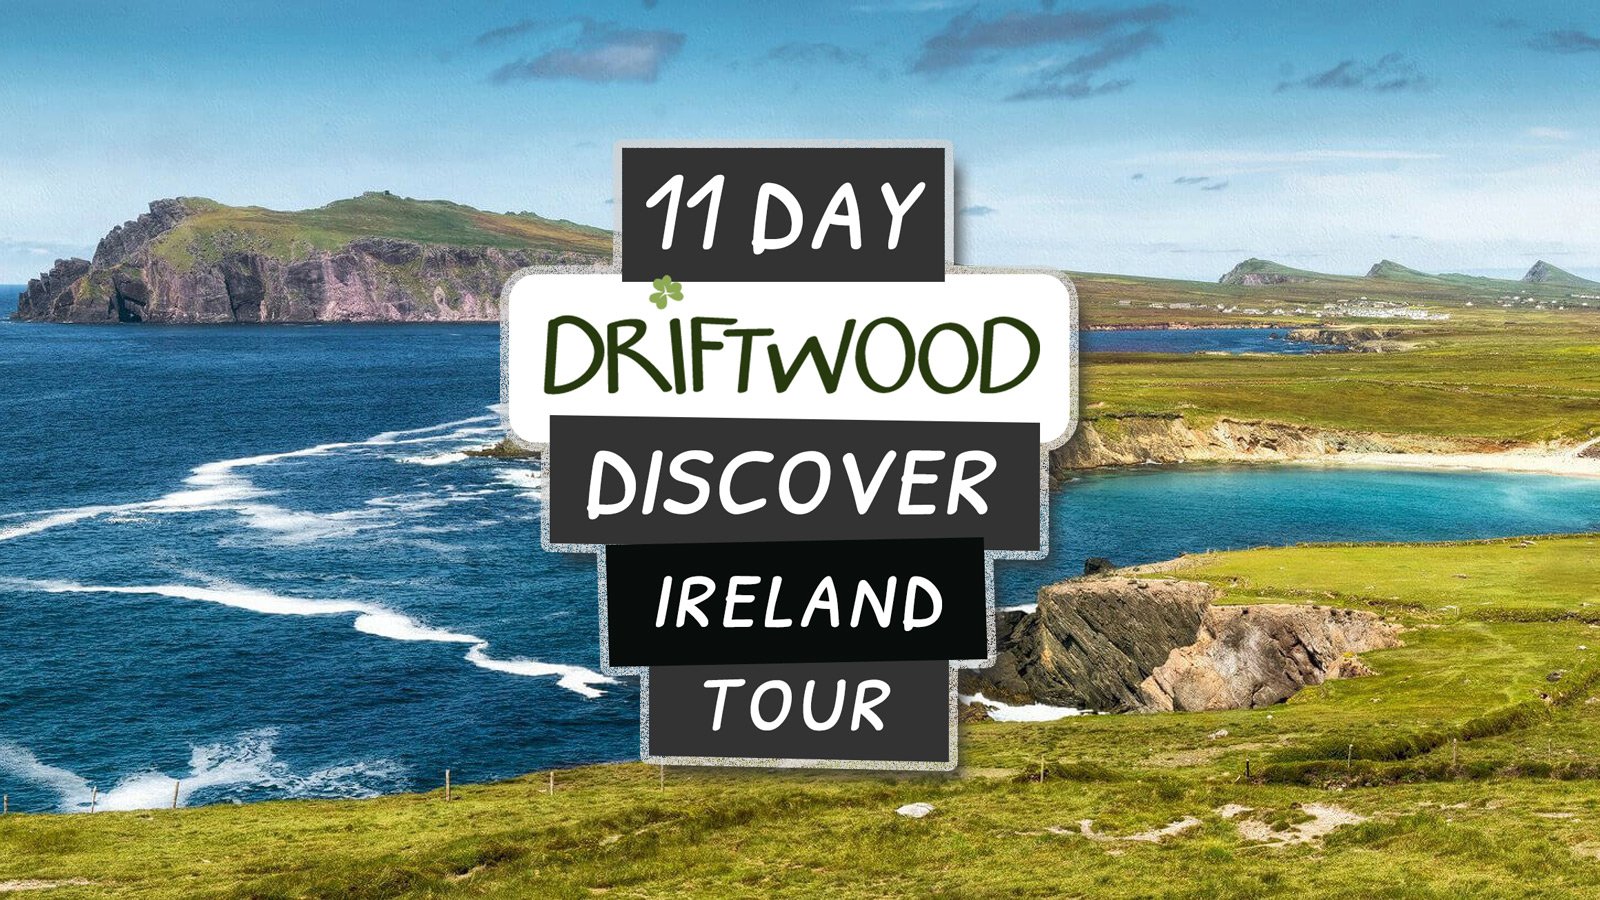 driftwood tours ireland reviews